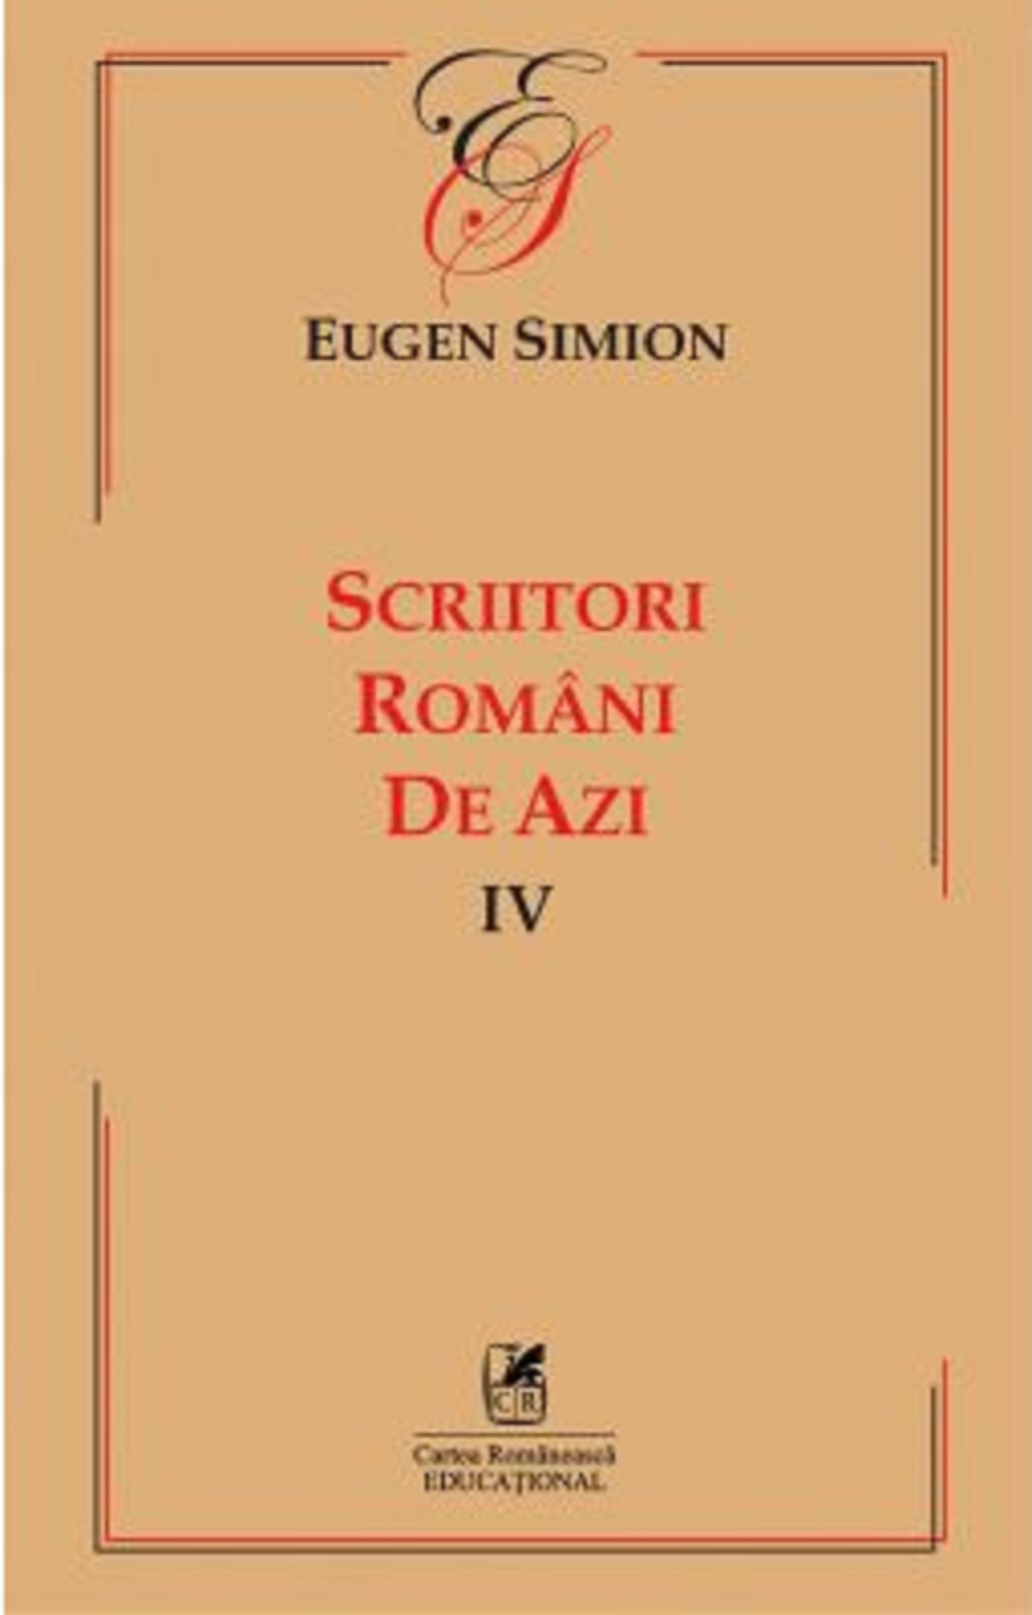 Scriitorii romani de azi IV | Eugen Simion Azi 2022